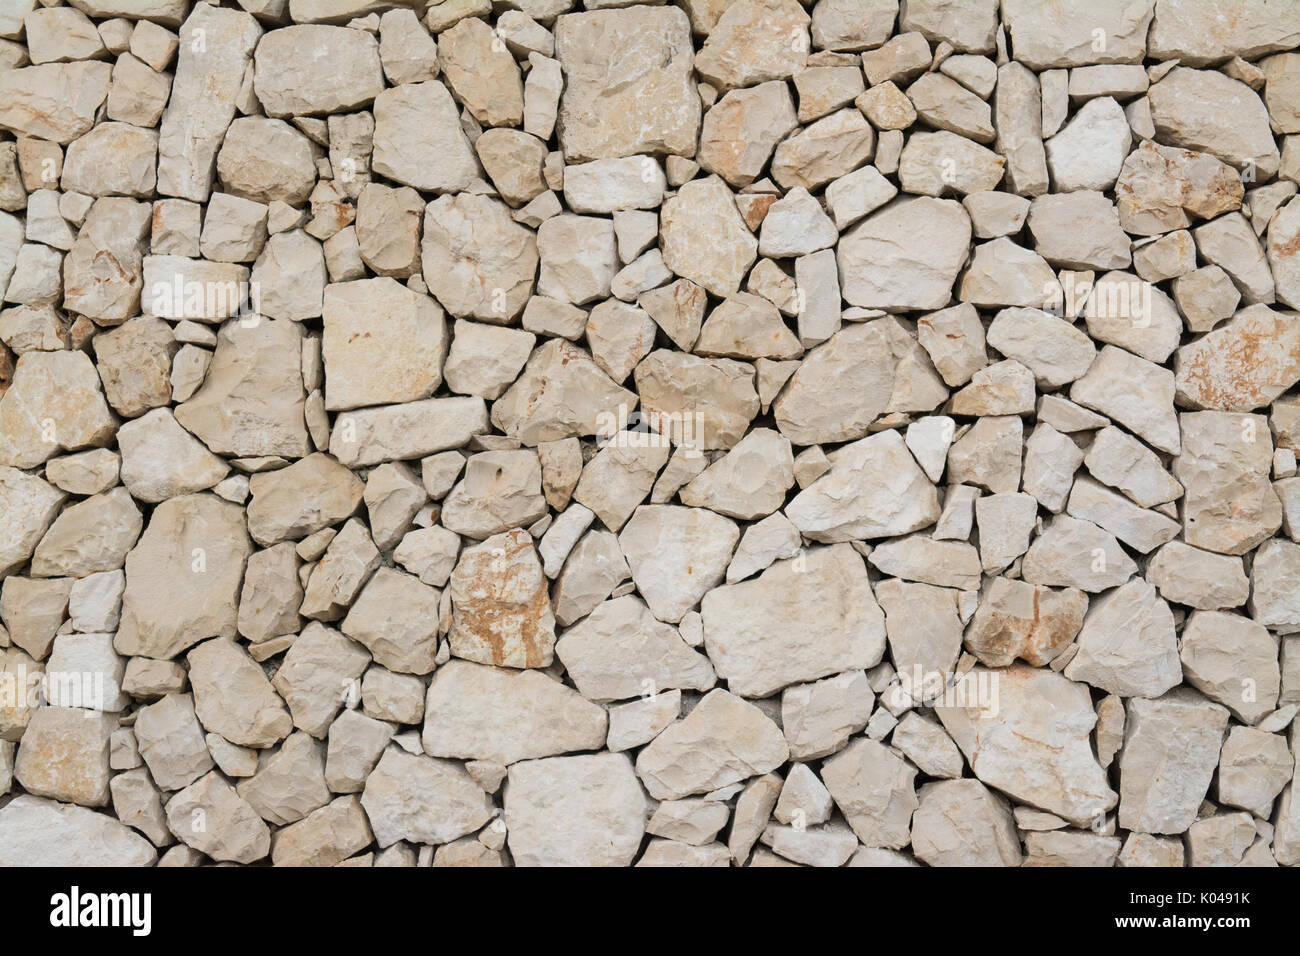 Muro de piedra seca natural típico de los vistos en la Costa Blanca, España Foto de stock